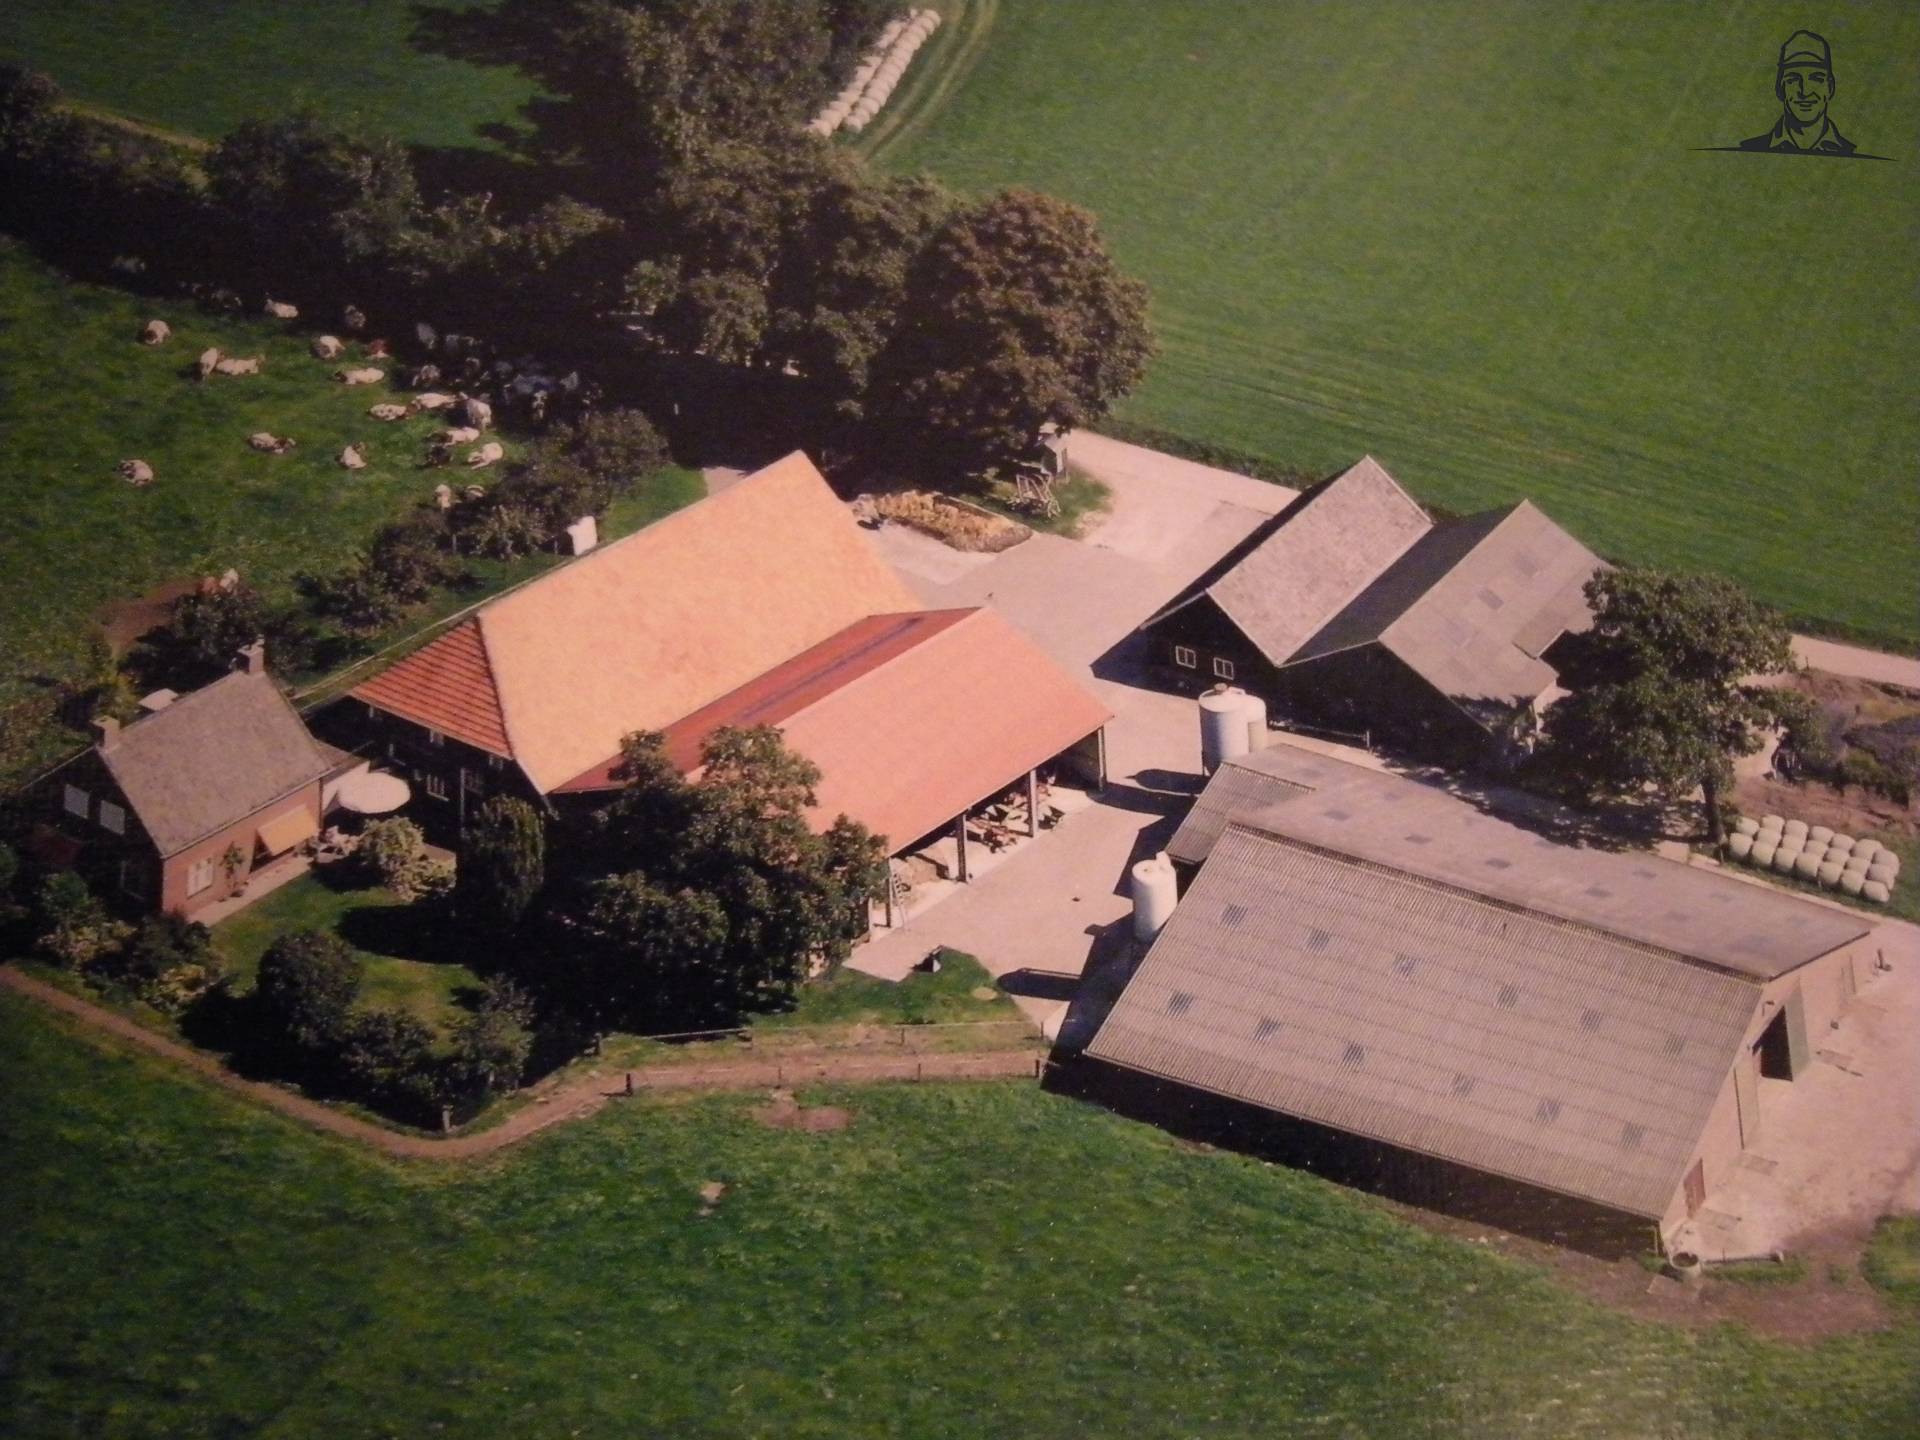 Luchtfoto van ons bedrijf uit 2006 van Groothengeveld